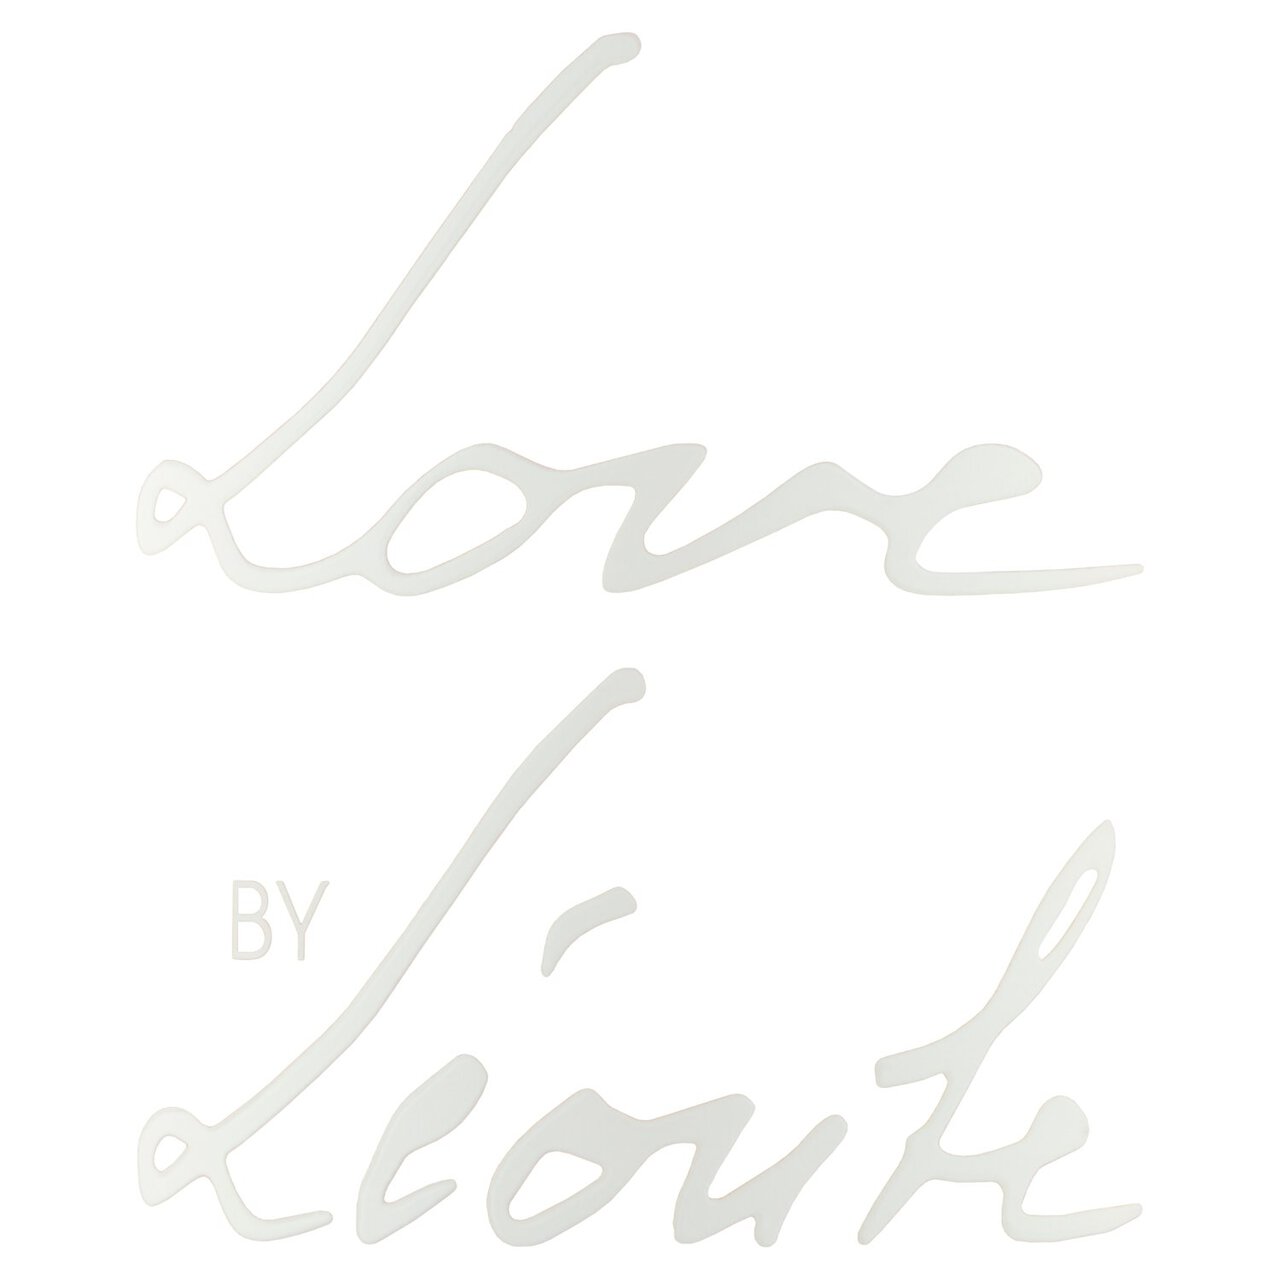 Love by Leoube Cotes de Provence Rose 75cl